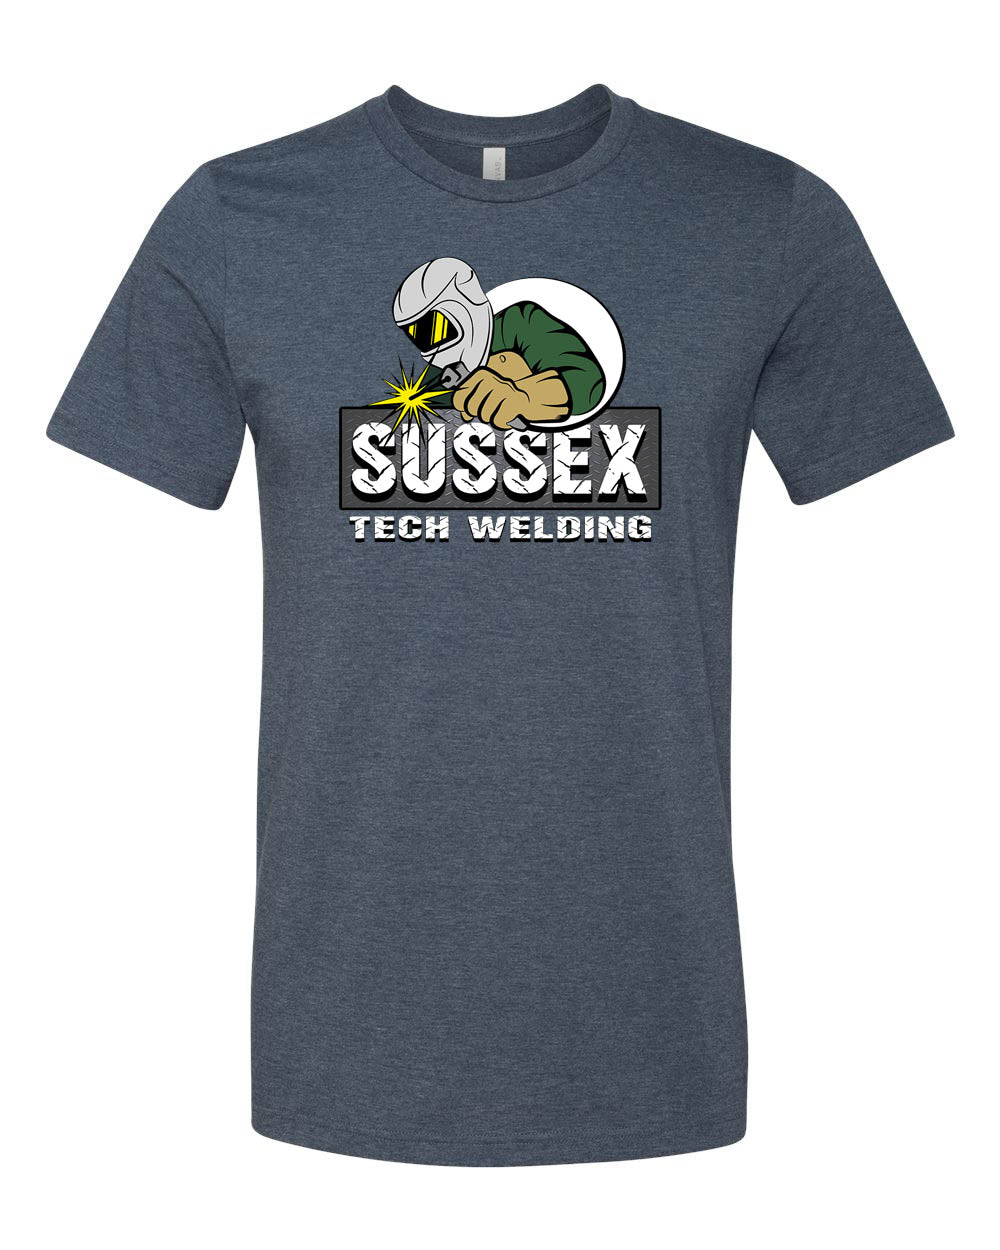 Sussex Tech Welding Design 2 T-Shirt